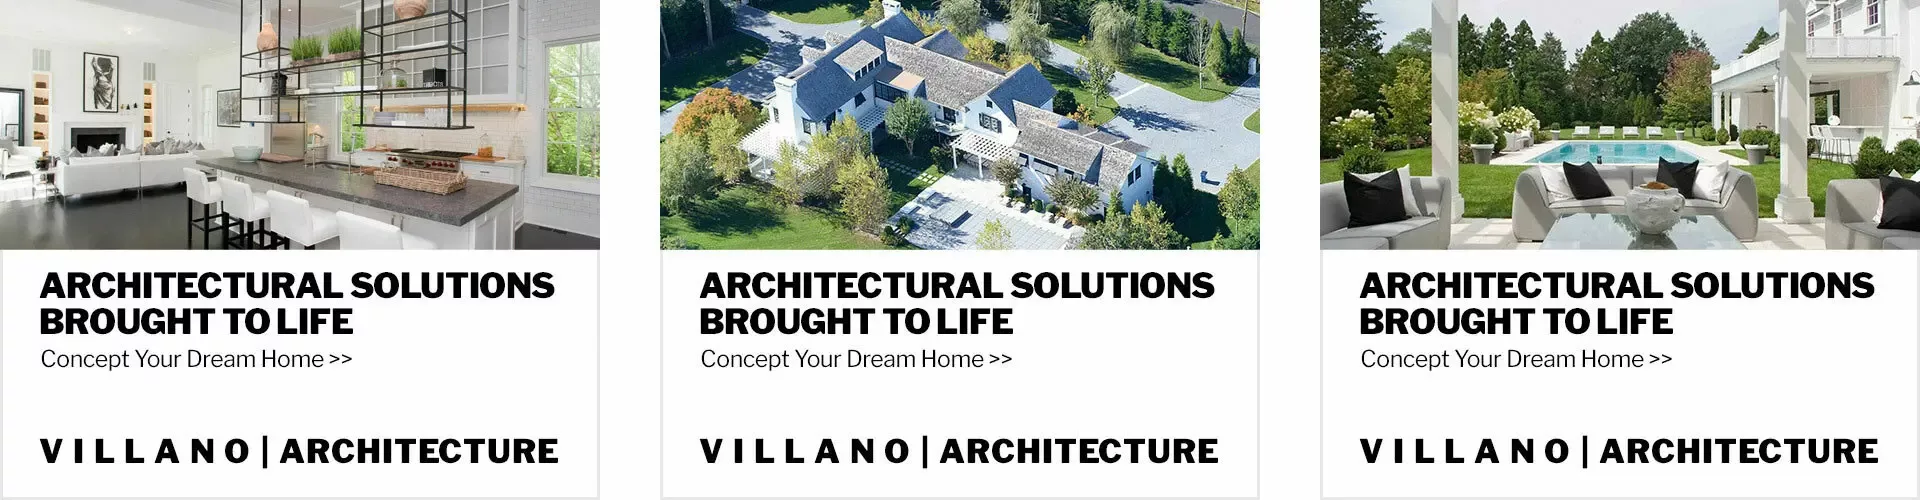 Villano Architecture